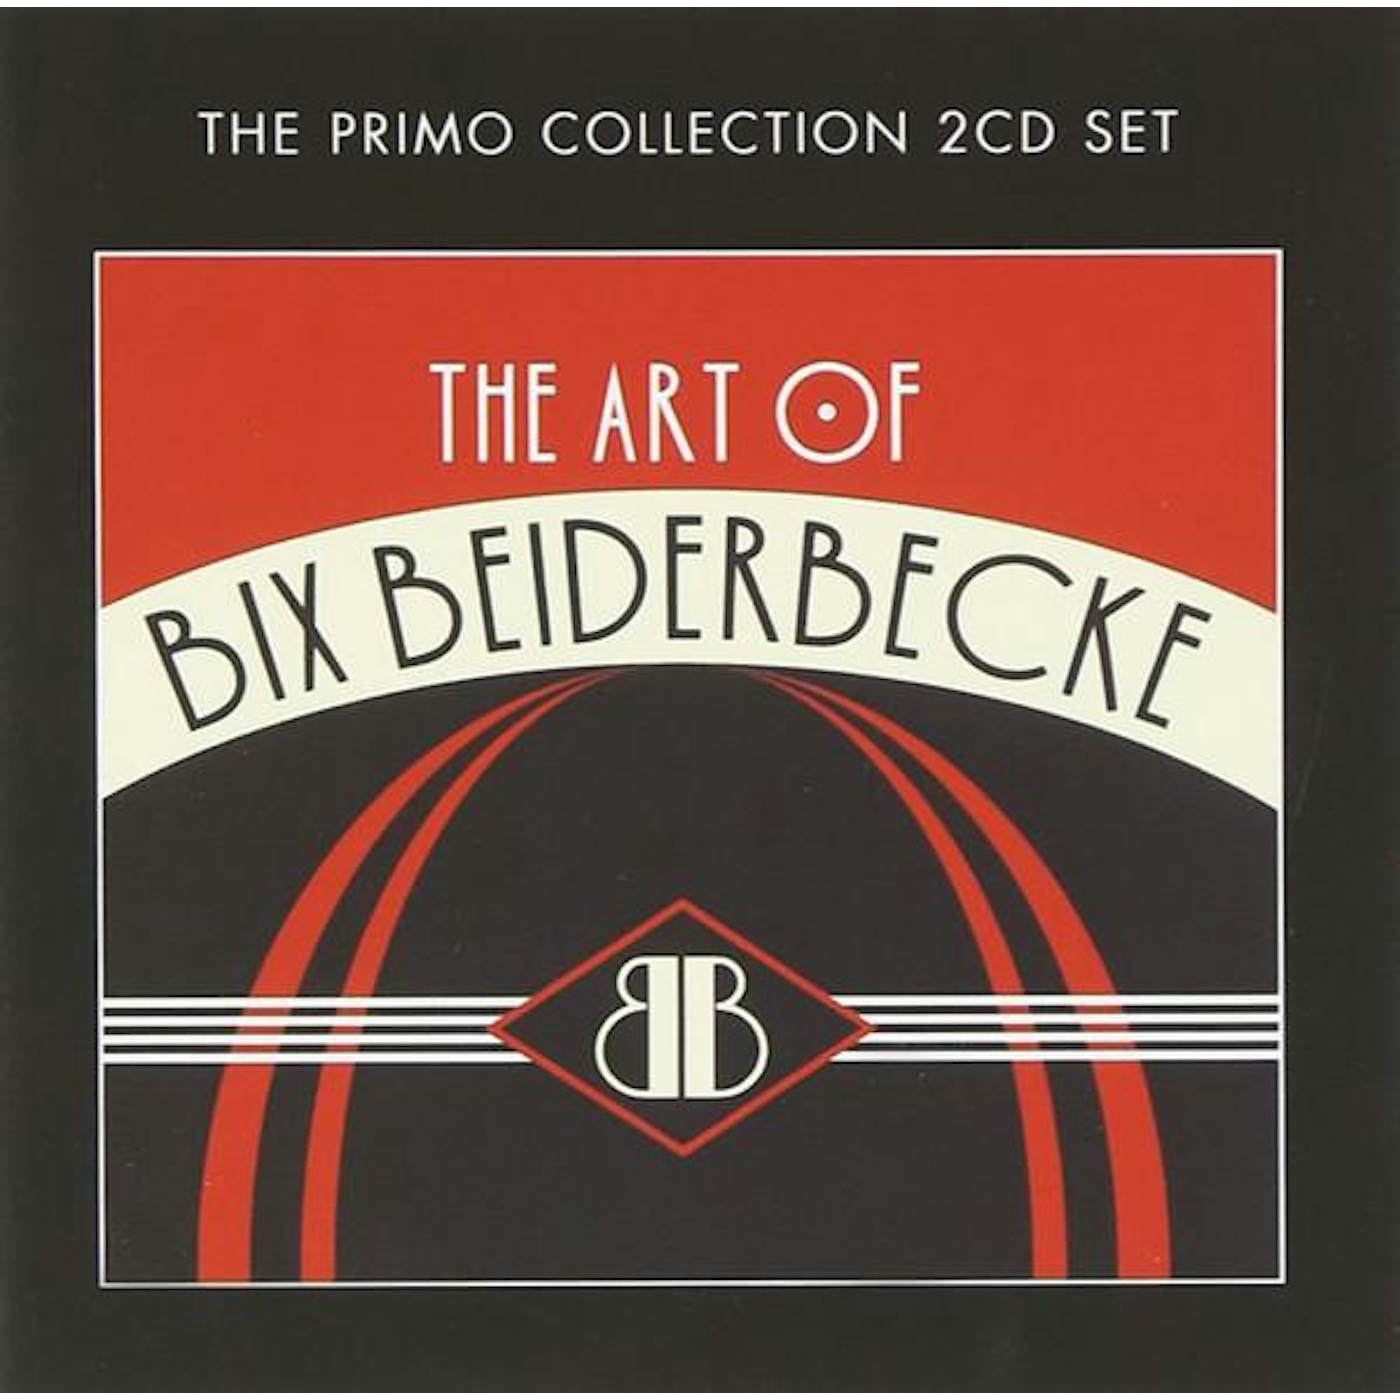 ART OF BIX BEIDERBECKE CD